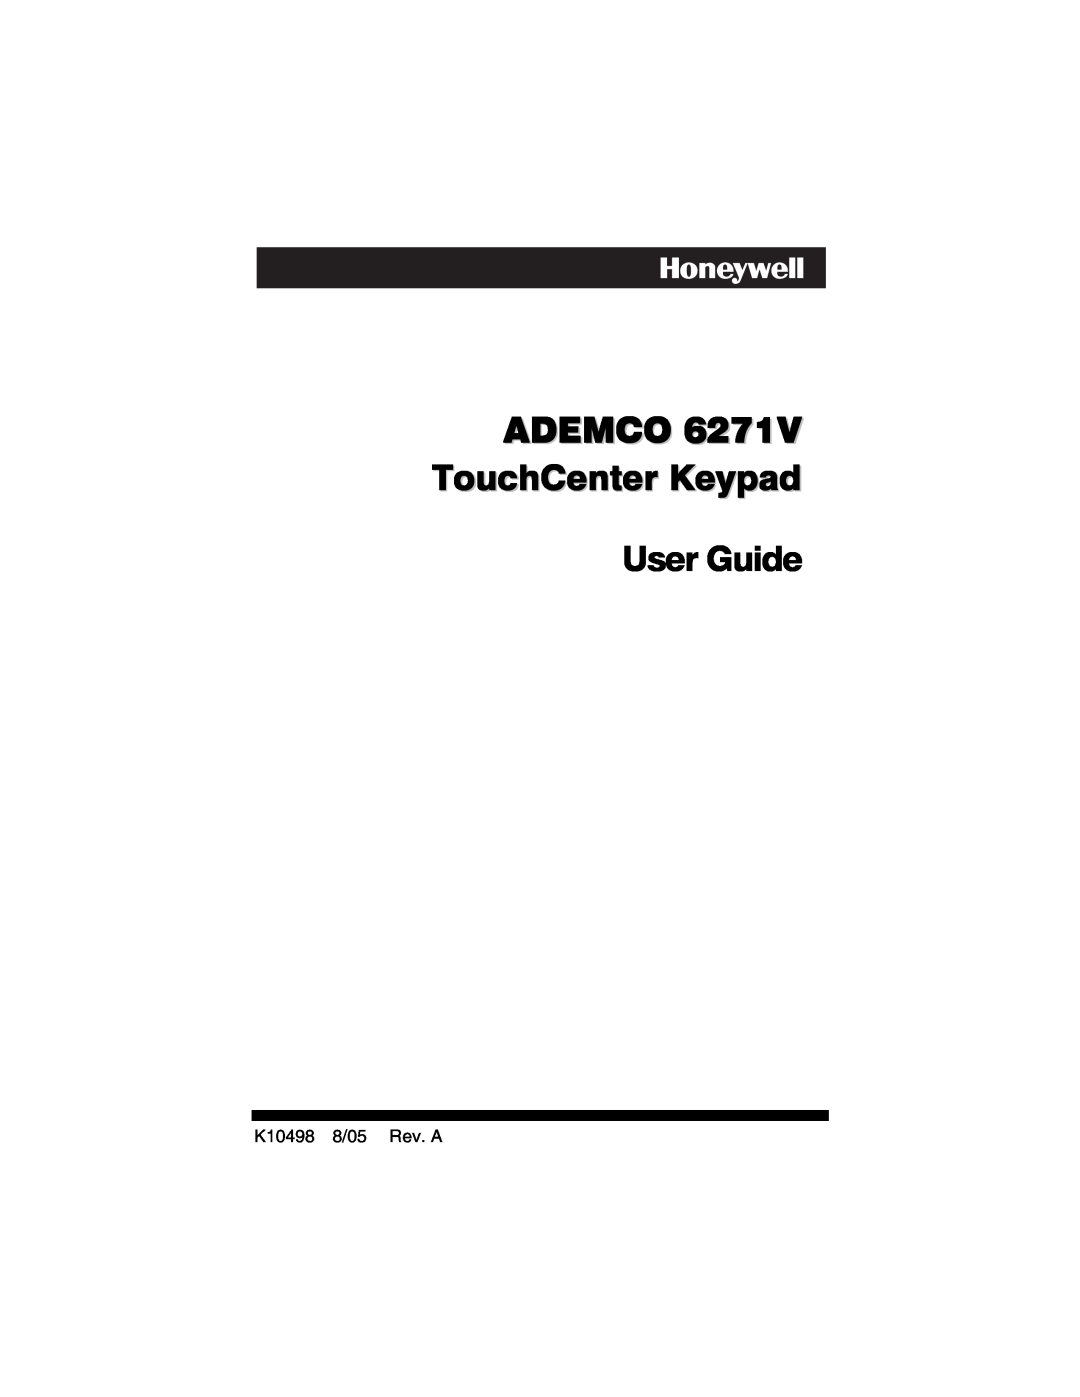 Honeywell 6271V manual User Guide, ADEMCO TouchCenter Keypad, K10498 8/05 Rev. A 